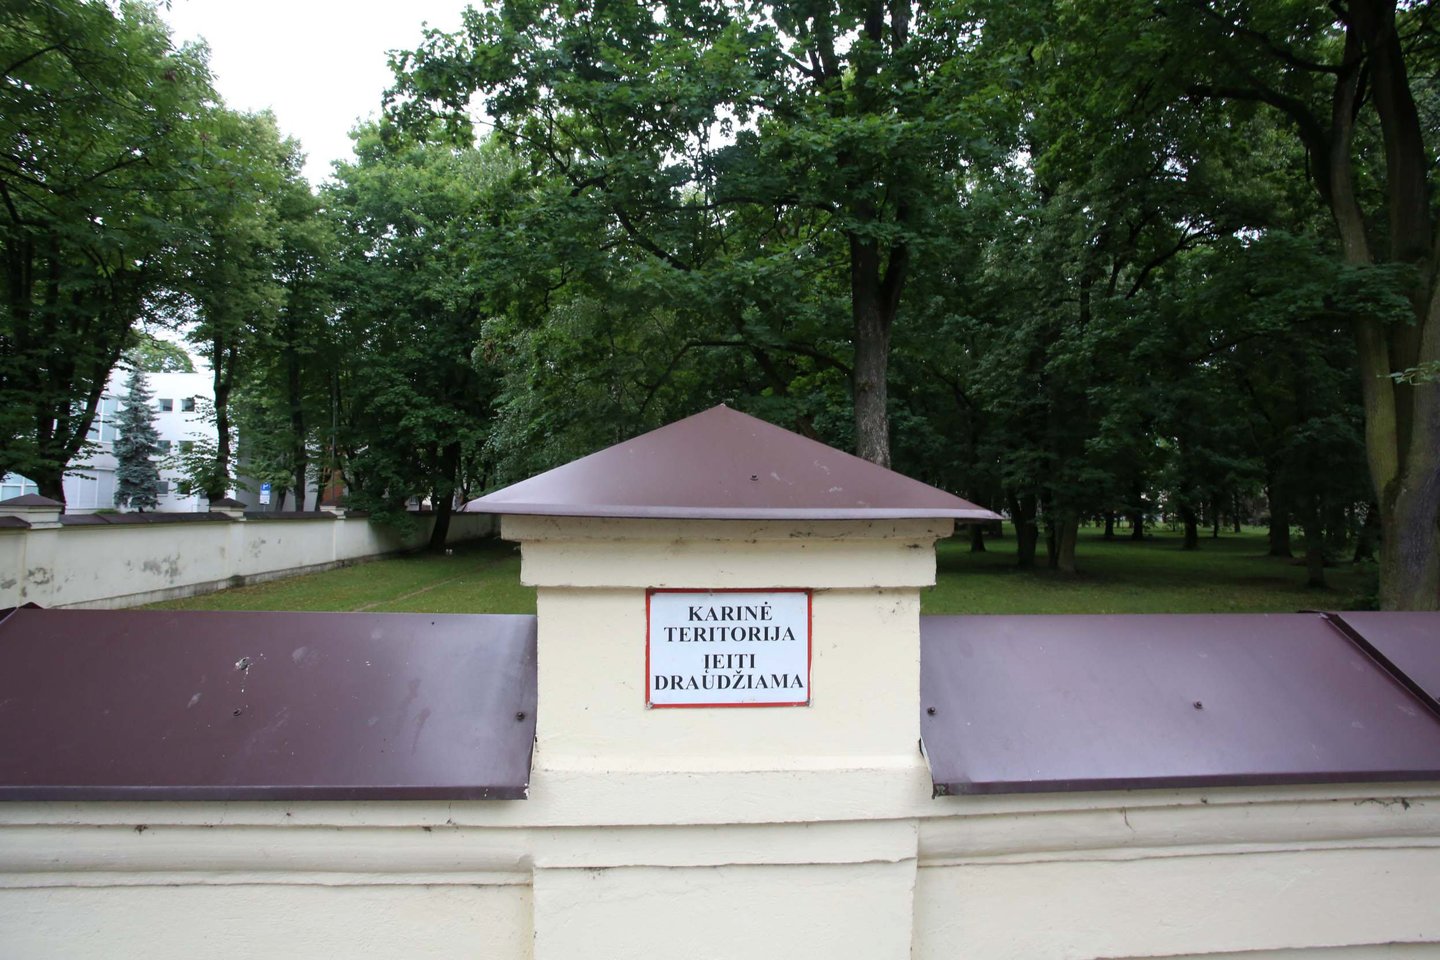  Šiuo metu Karo medicinos tarnybos teritorijoje esantis parkas yra aptvertas aukšta tvora.<br> M.Patašiaus nuotr.